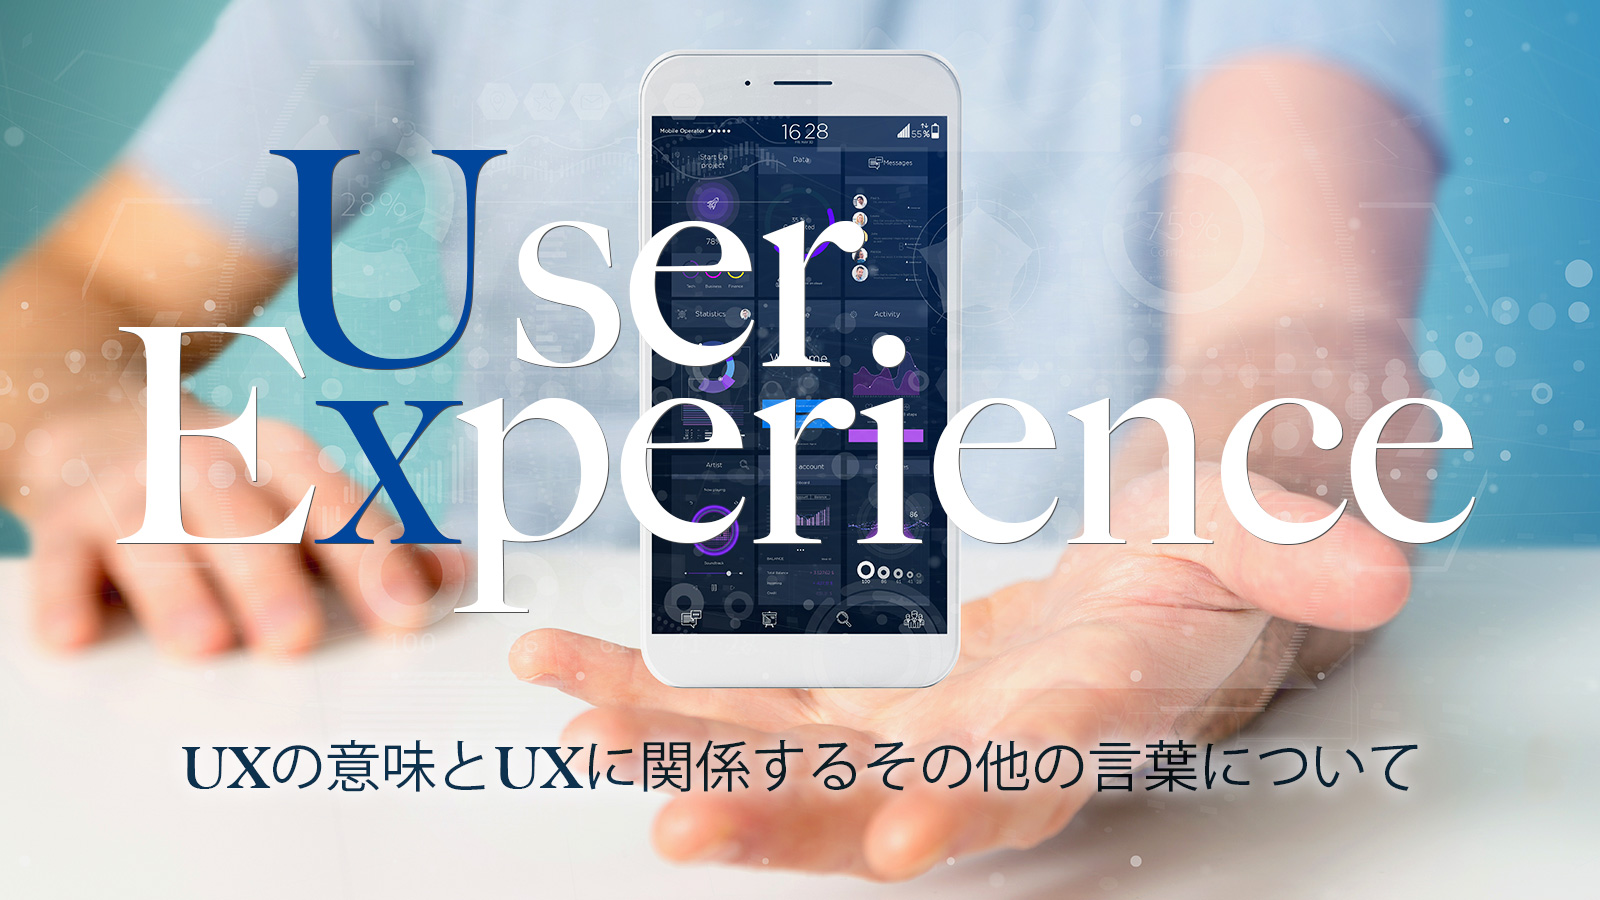 UXの意味とUXに関係するその他の言葉について 〜UXデザイン、UXライティング、CX、UXとSEO〜